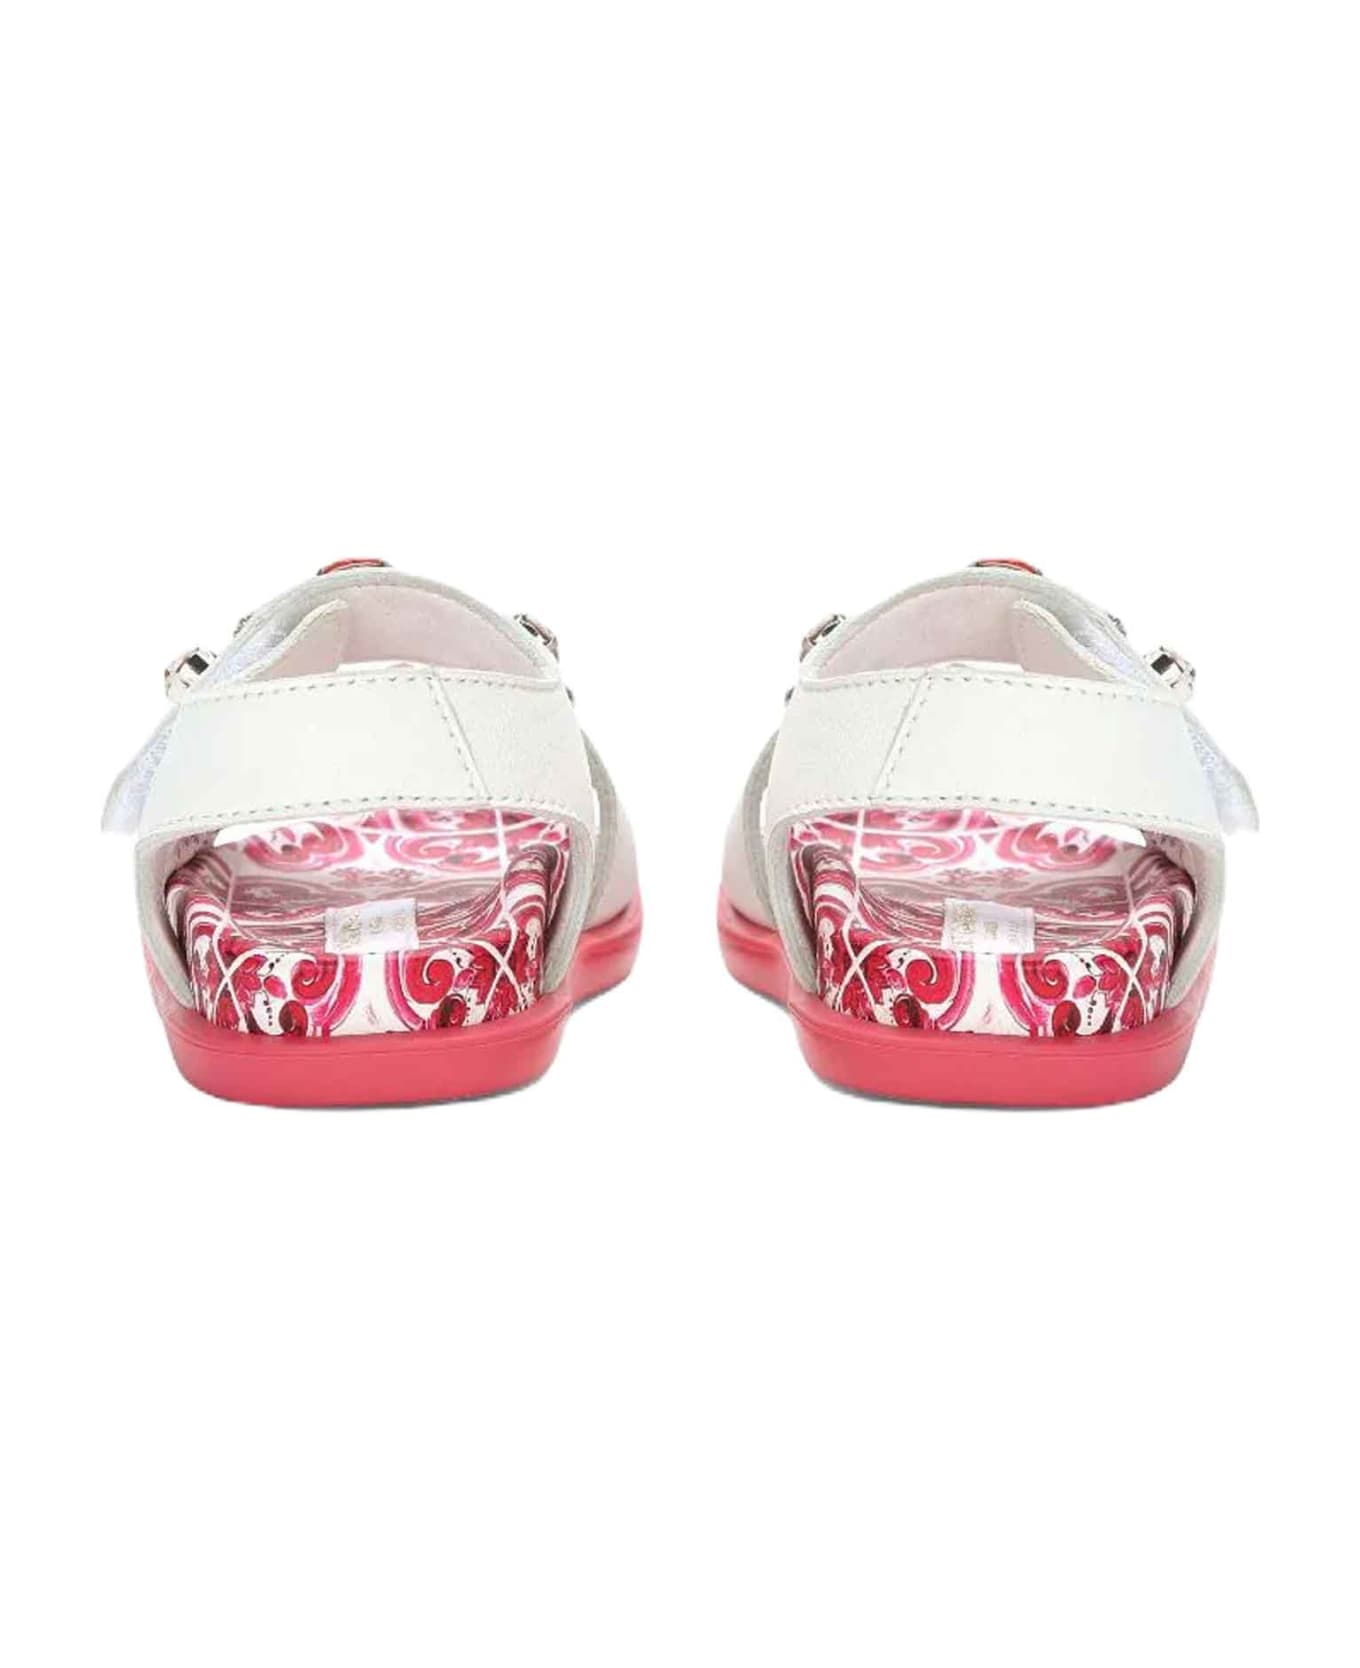 Dolce & Gabbana White/fuchsia Sandals Girl Dolce&gabbana Kids - Fucsia シューズ